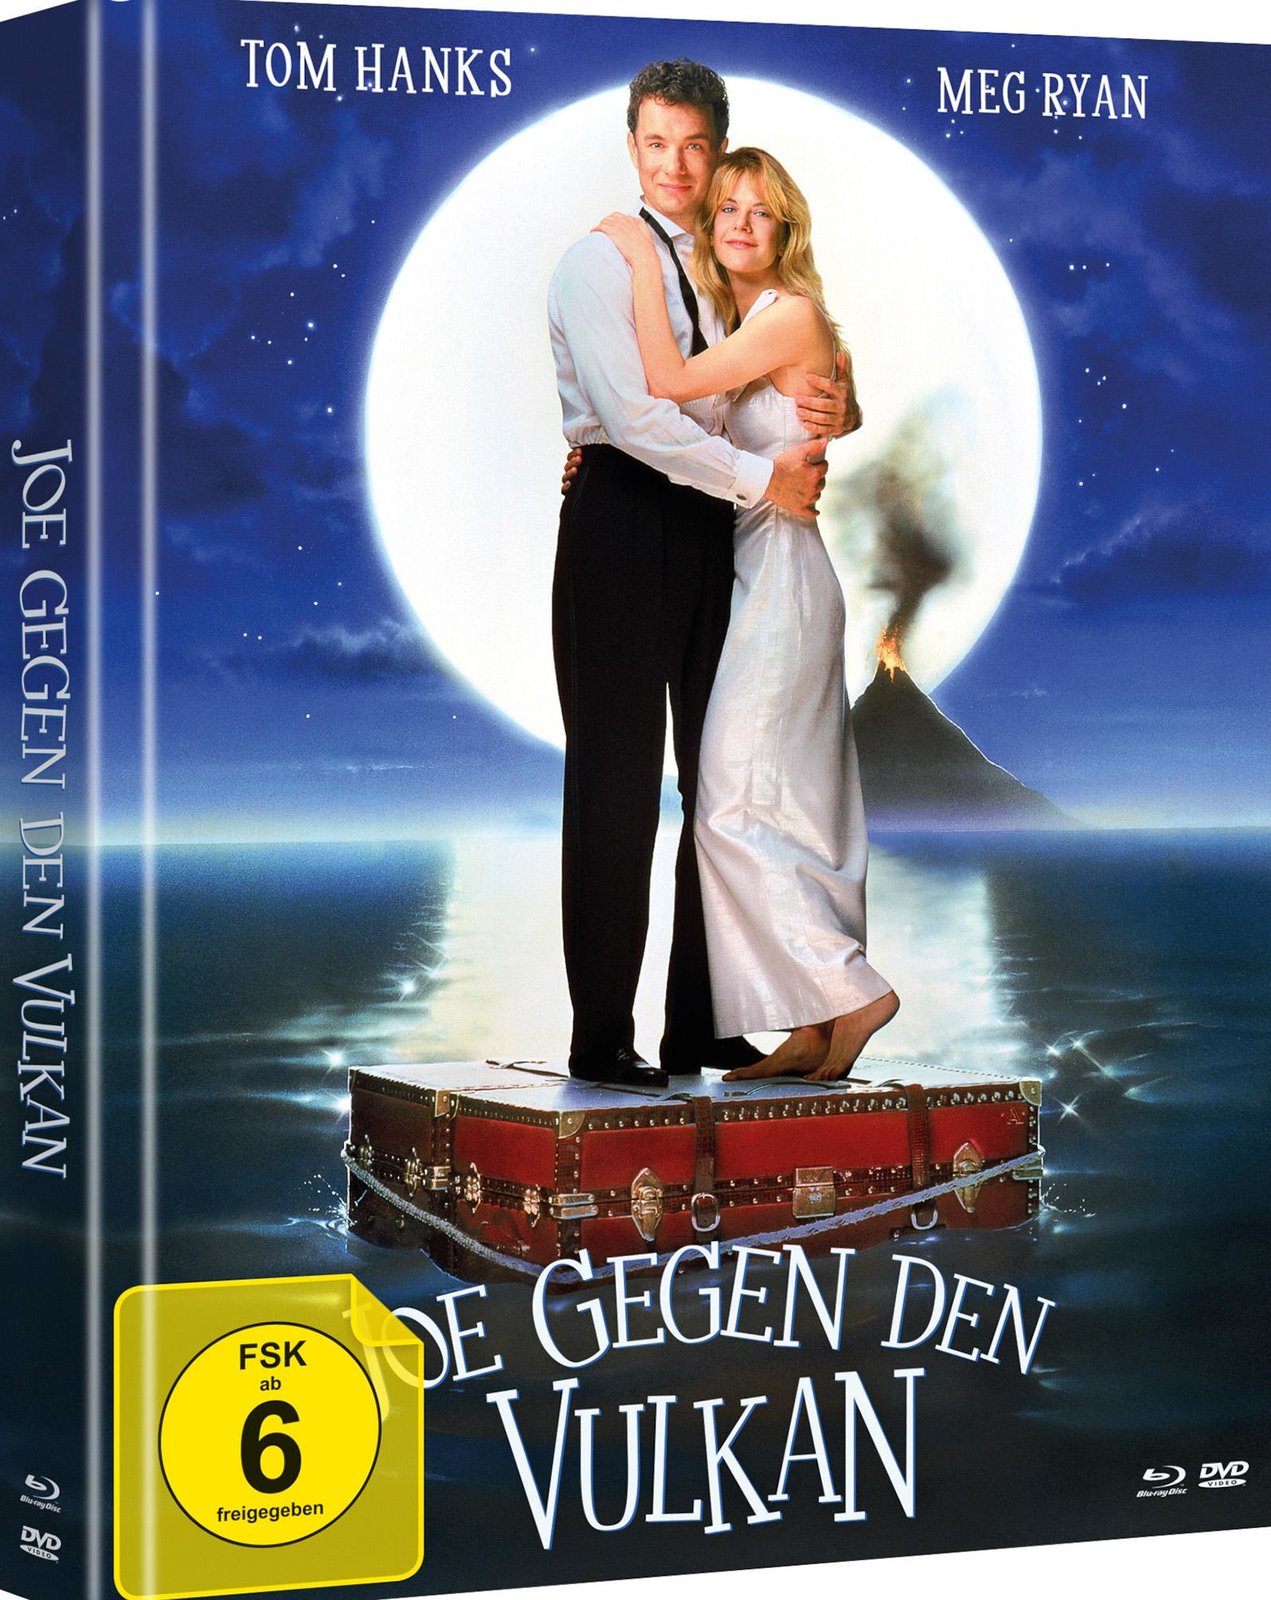 Joe gegen den Vulkan - Uncut Mediabook Edition  (DVD+blu-ray)